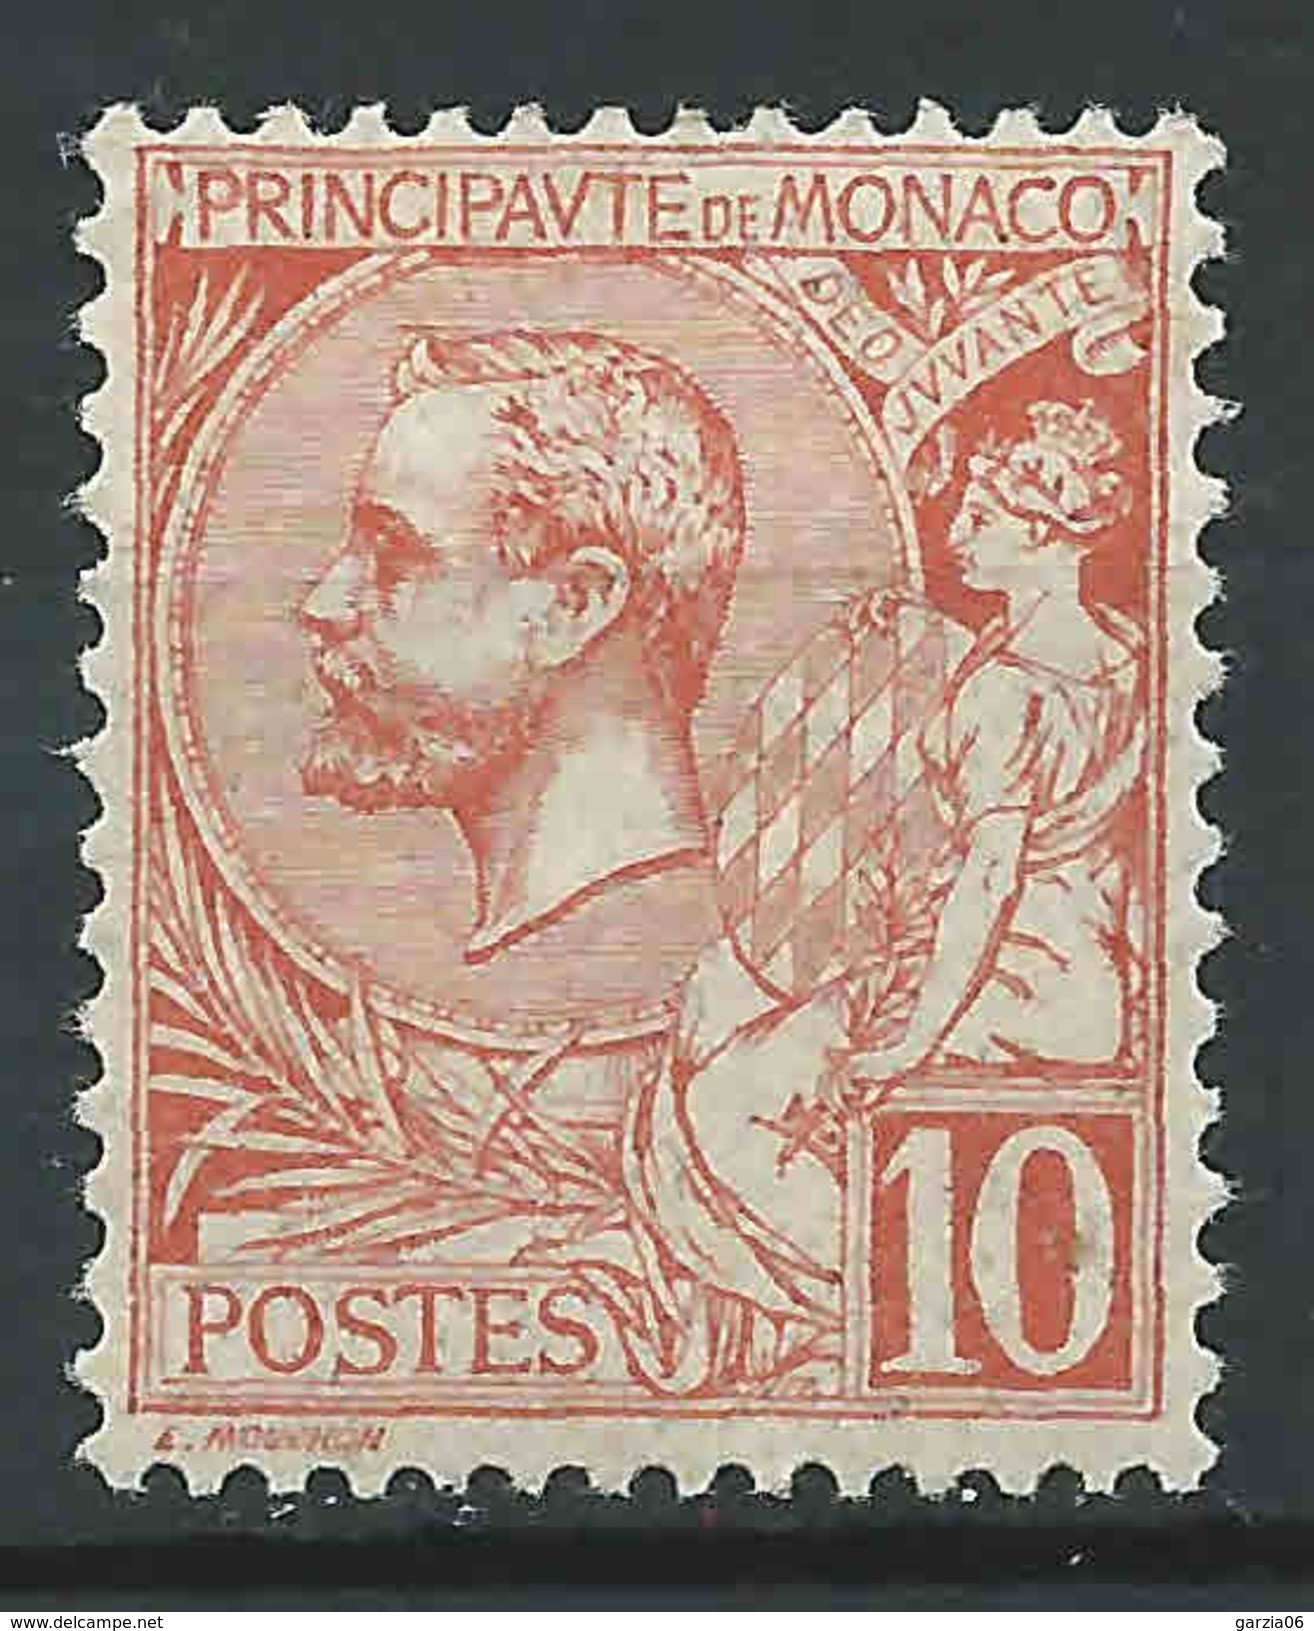 Monaco - 1901 -  Prince Albert 1ier - N° 23  -neuf * - MLH - Unused Stamps